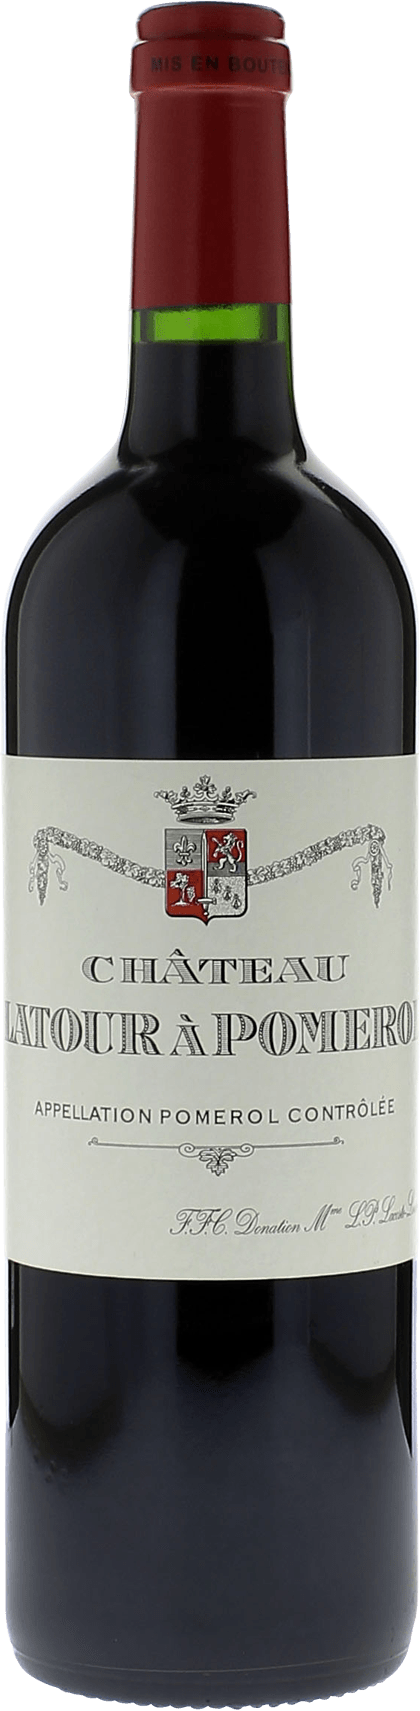 Latour  pomerol 2010  Pomerol, Bordeaux rouge